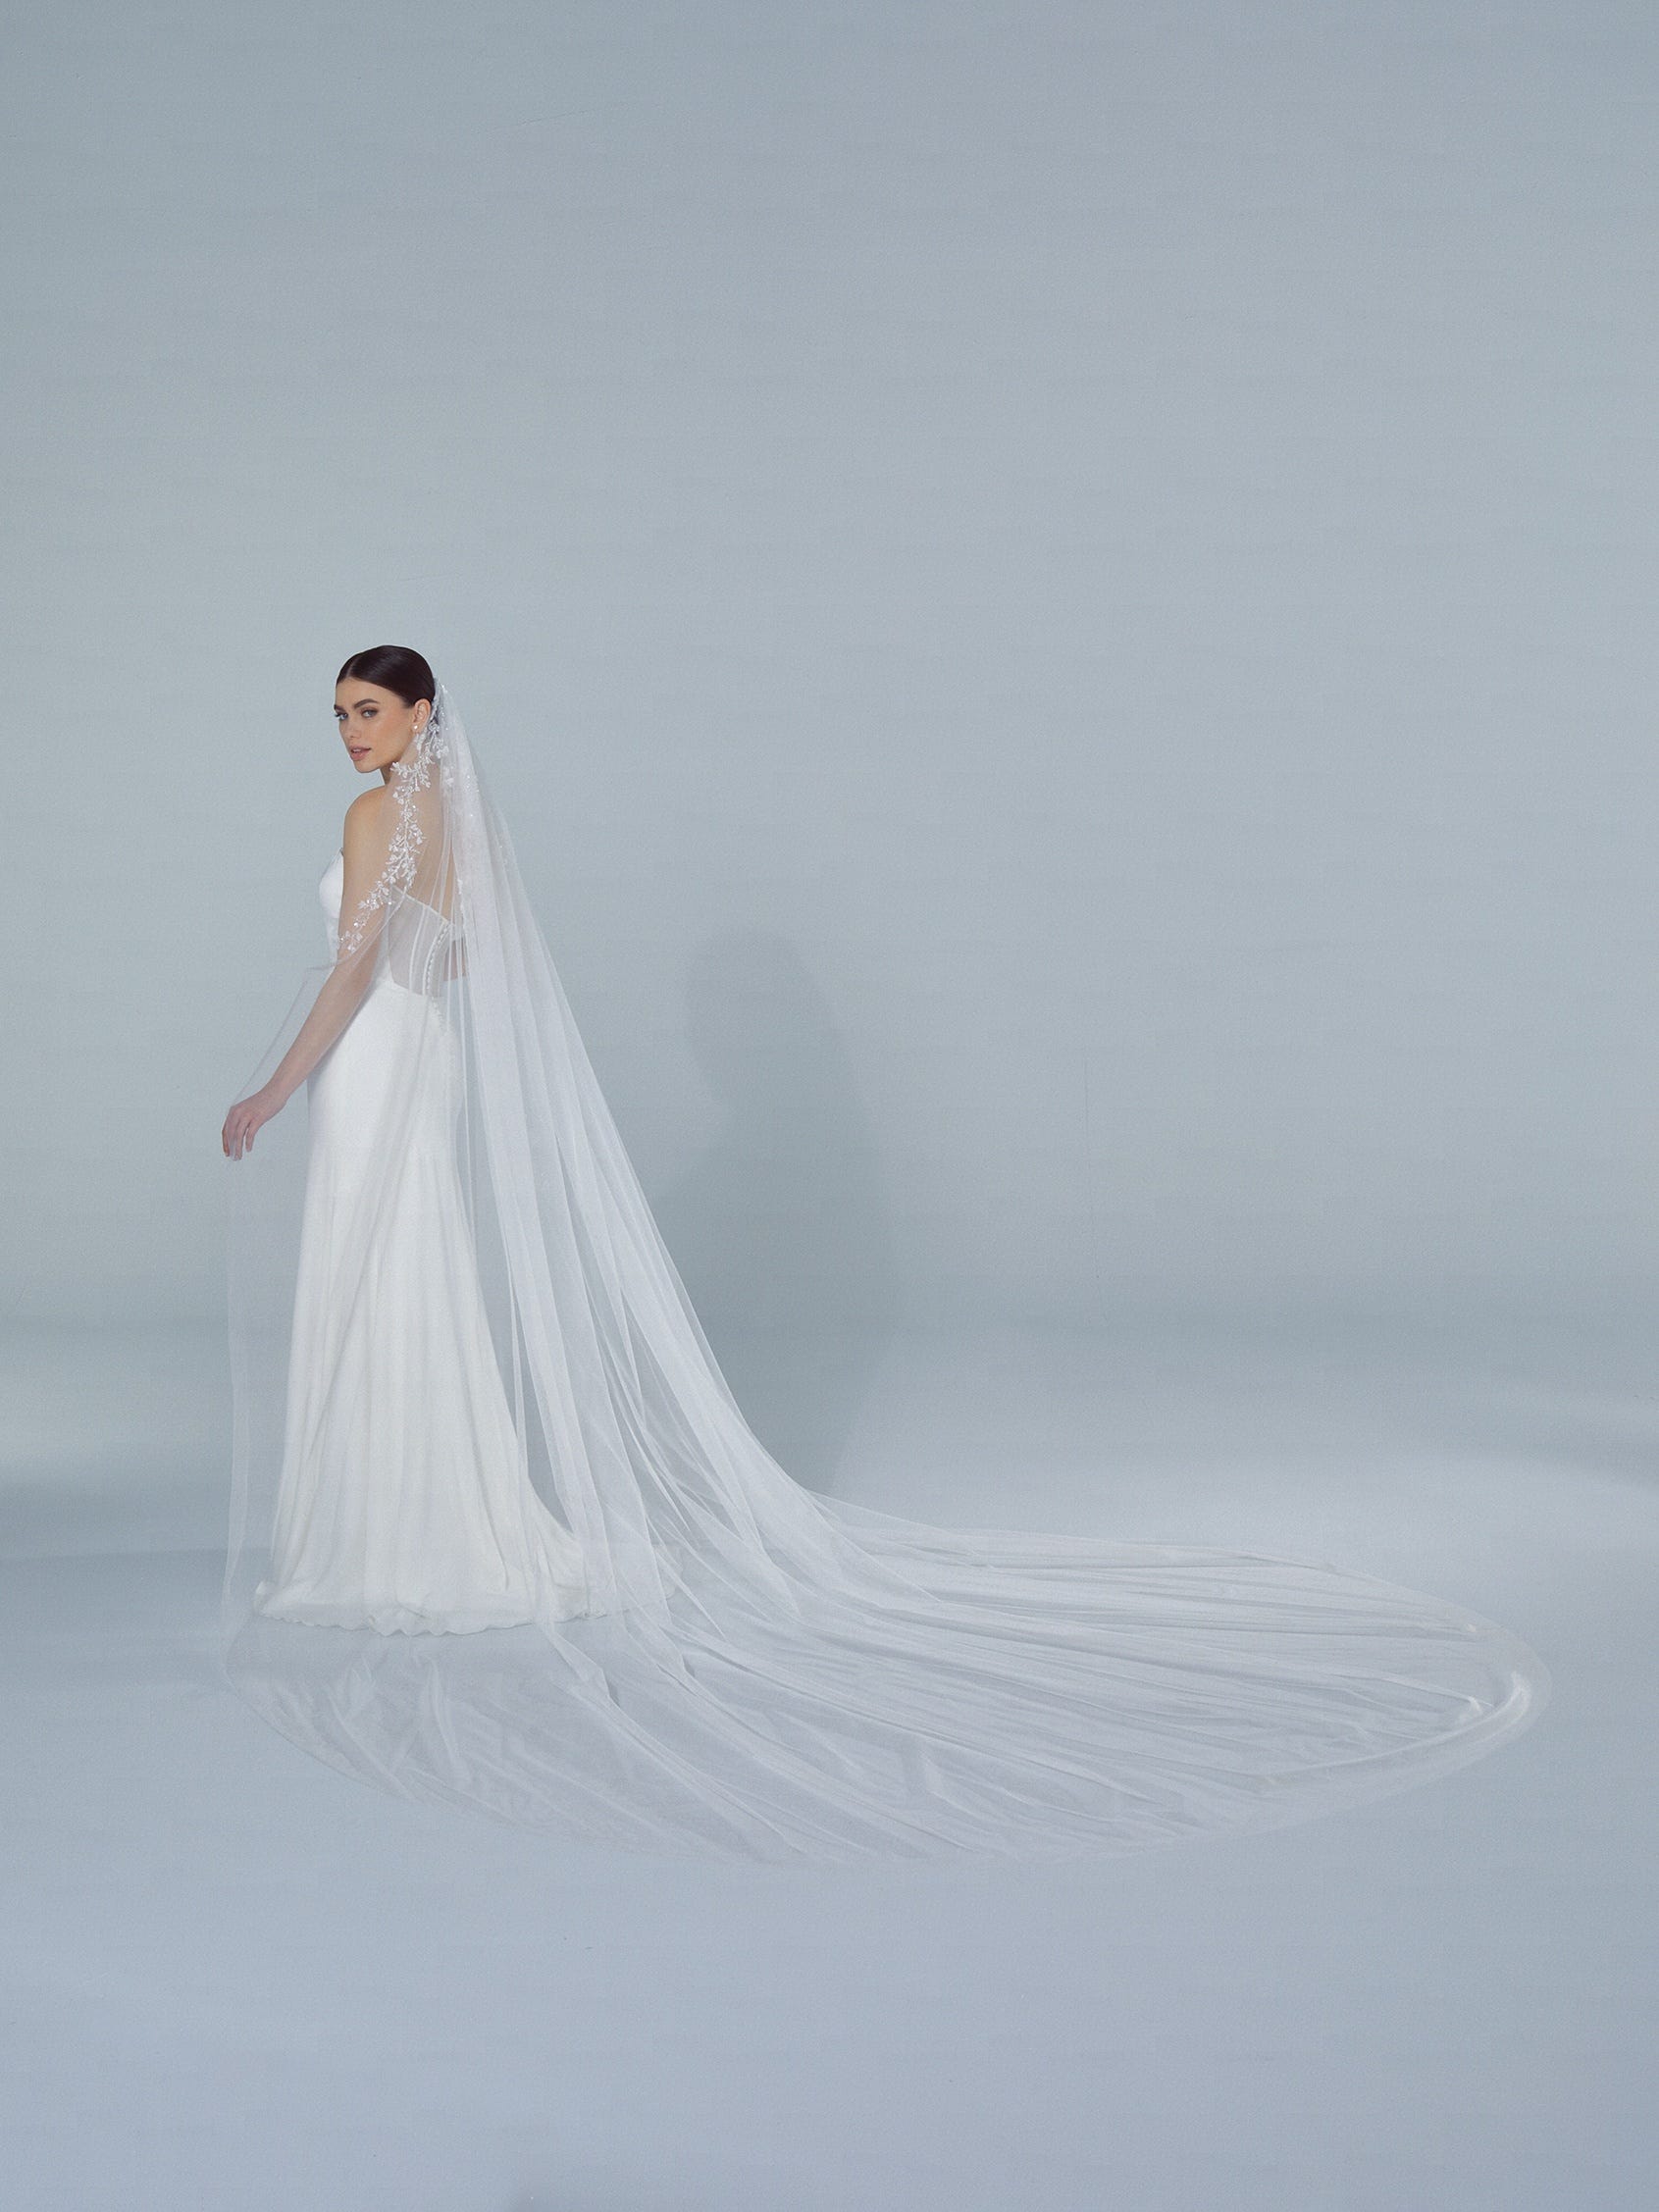 Wedding Veils for Brides | Pronovias